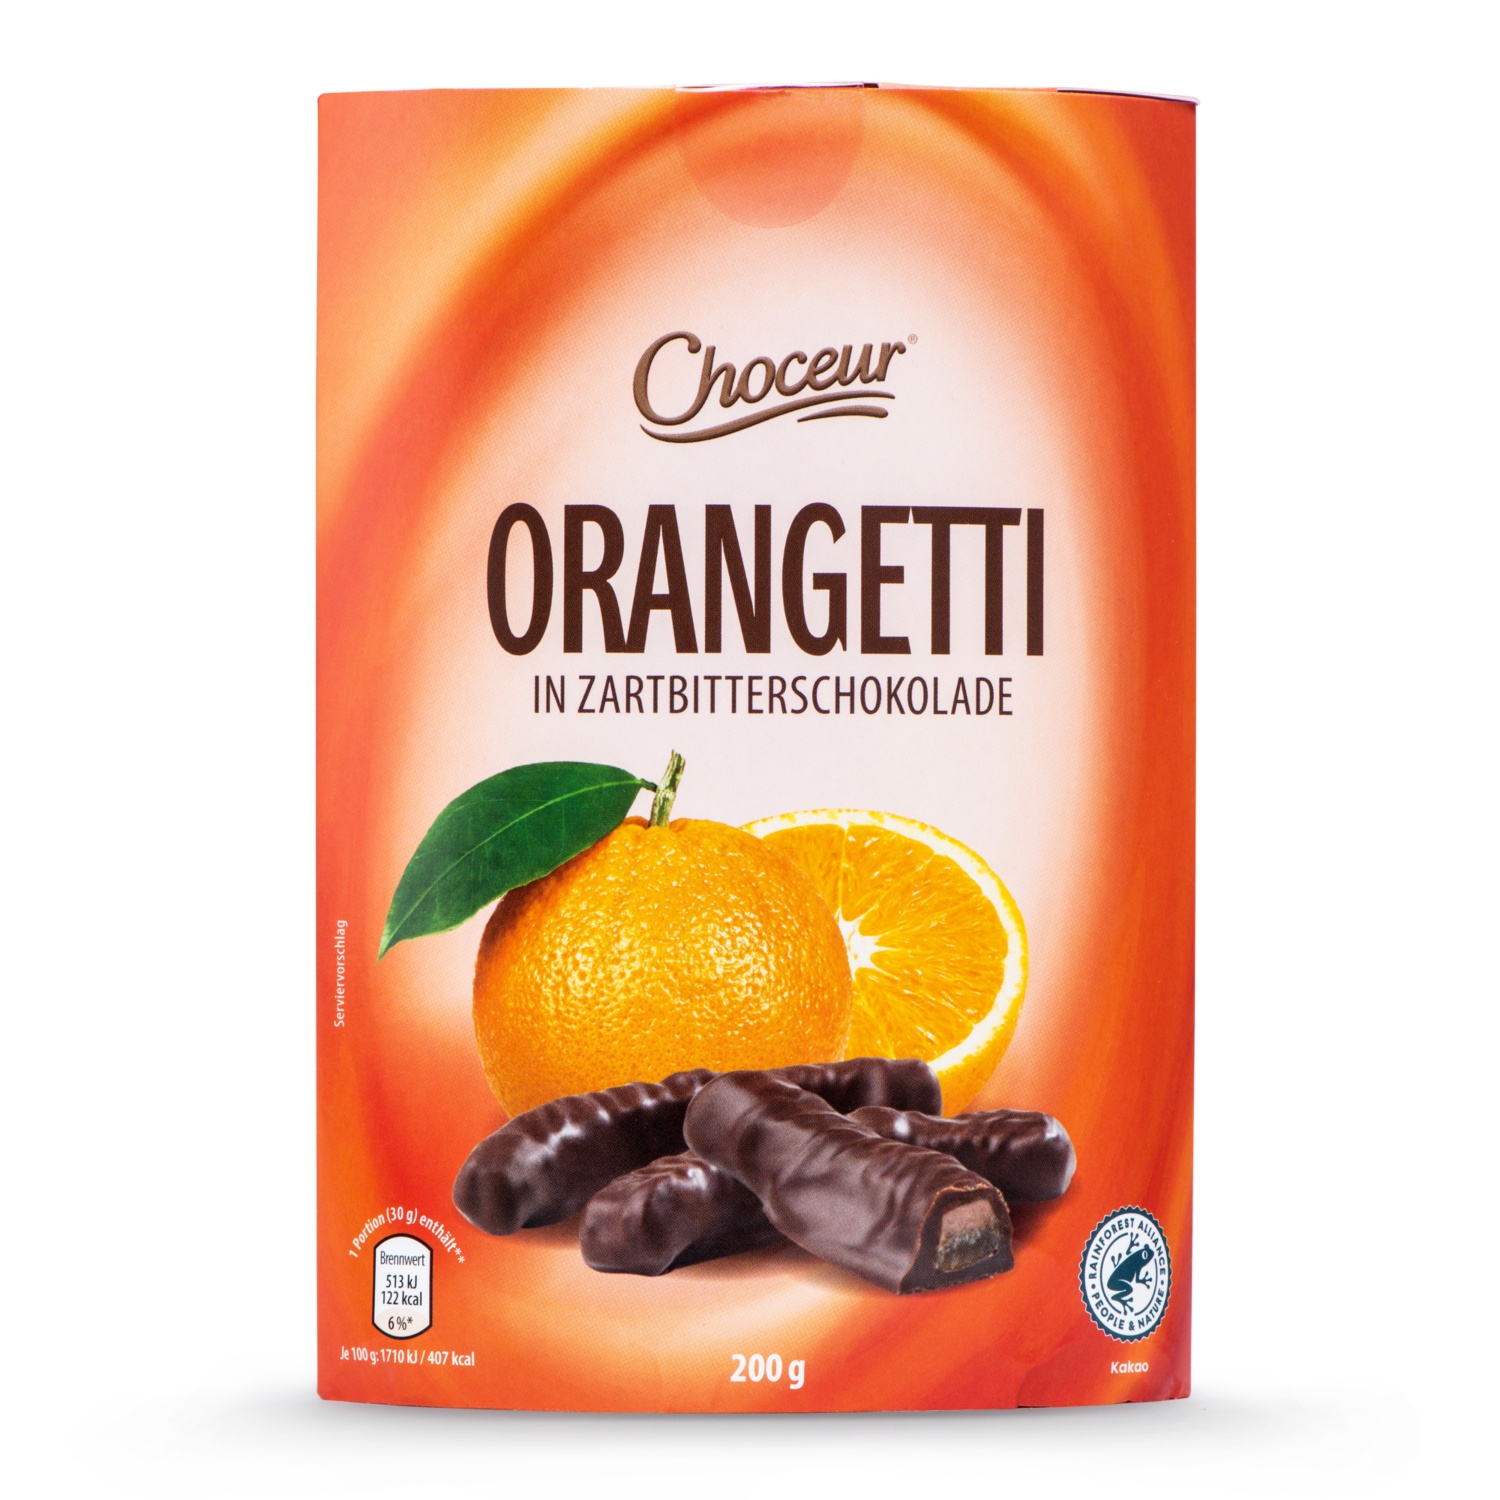 CHOCEUR Früchte schokoliert, Orangetti